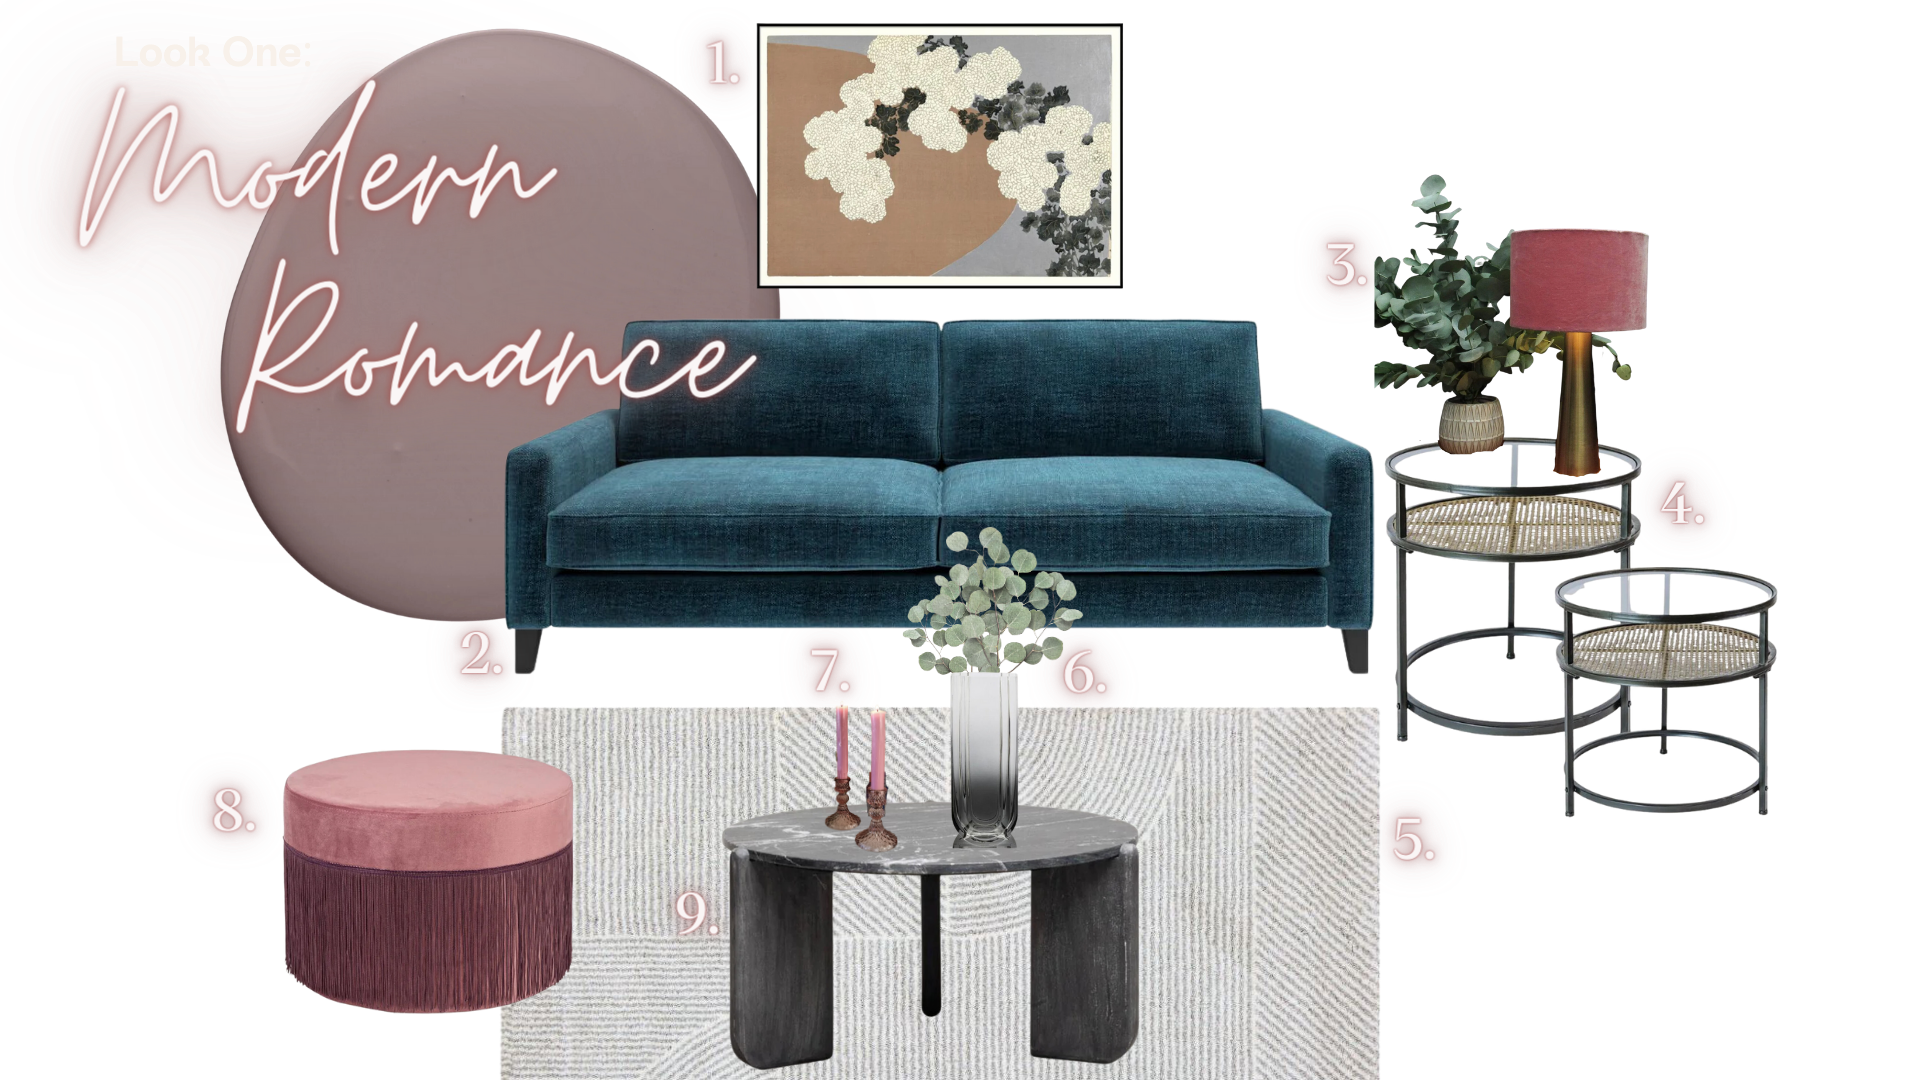 Moderner Romantik-Look | Möbel- und Haushaltswarengeschäft | Irish Home Shop | Oriana B